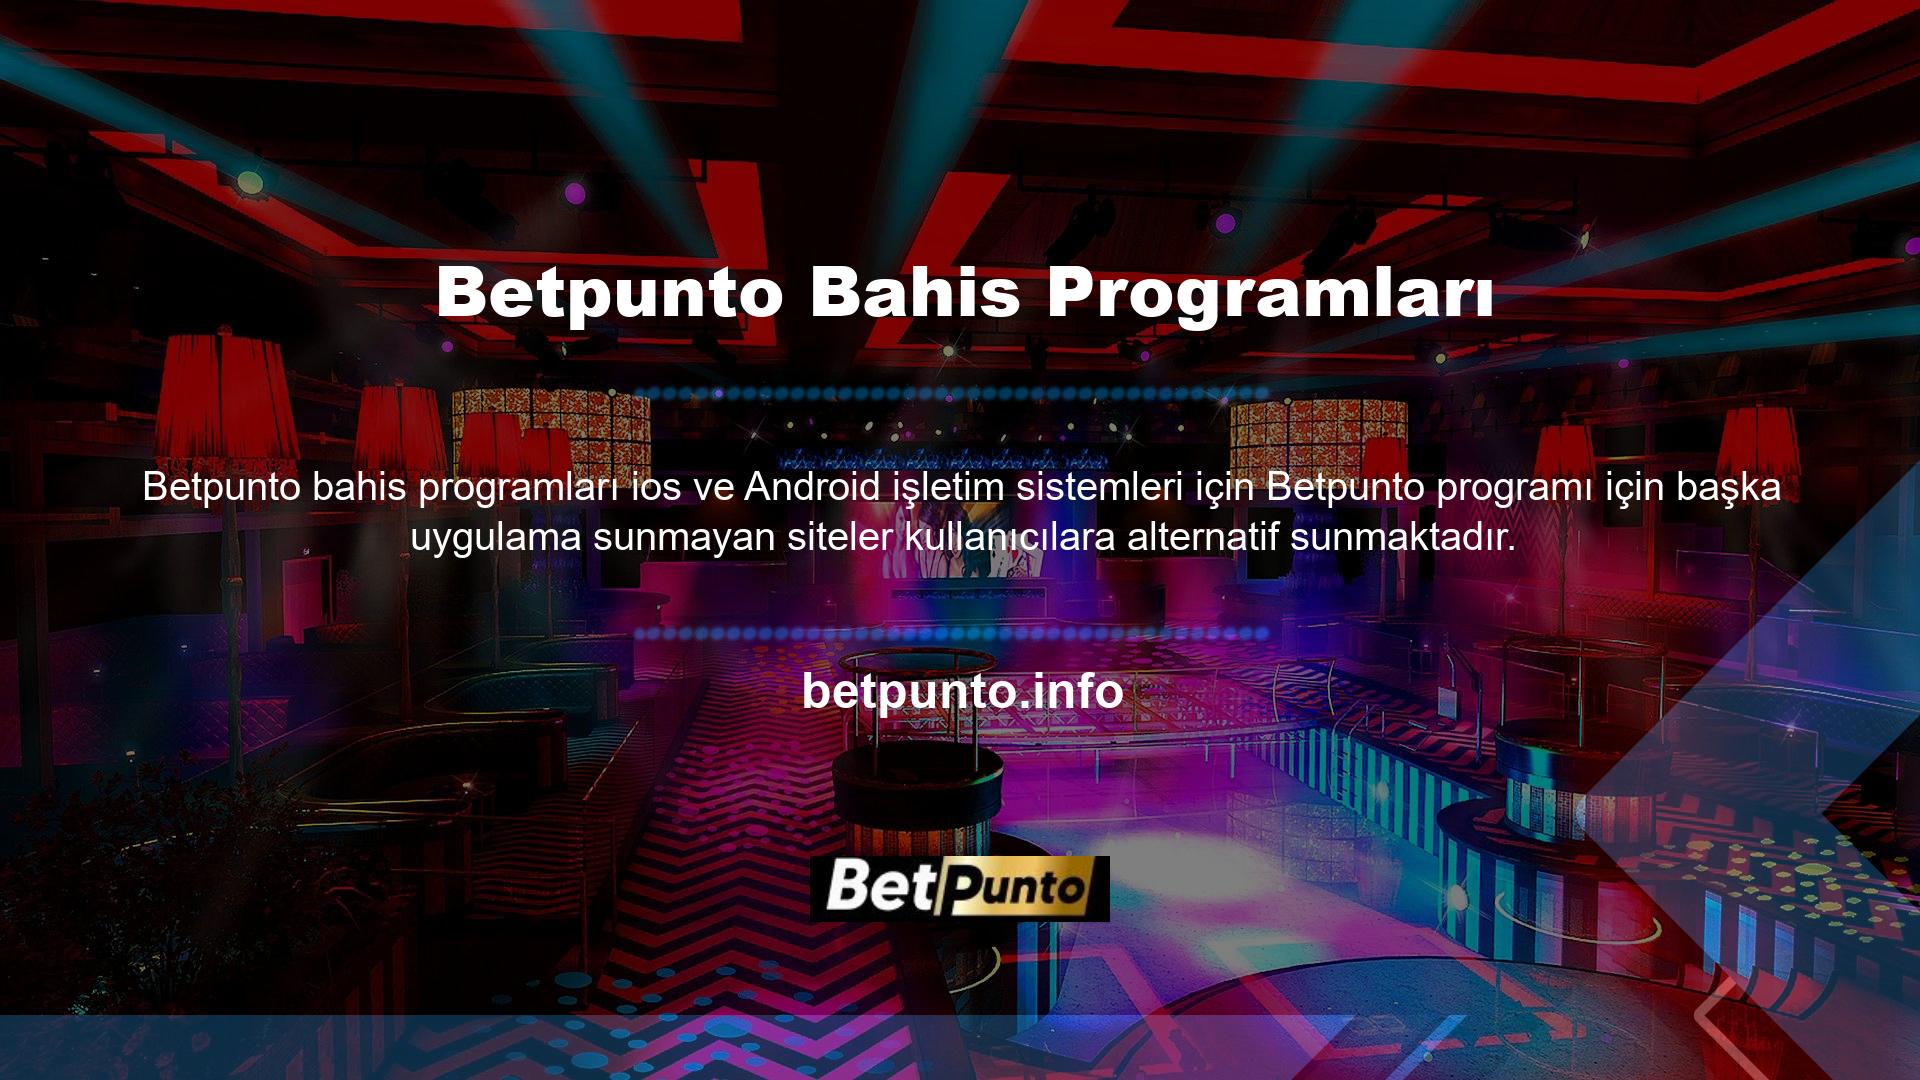 Bu nedenle kullanıcılar Betpunto yazılımını hem akıllı cihazlara hem de tabletlere indirebilmektedir